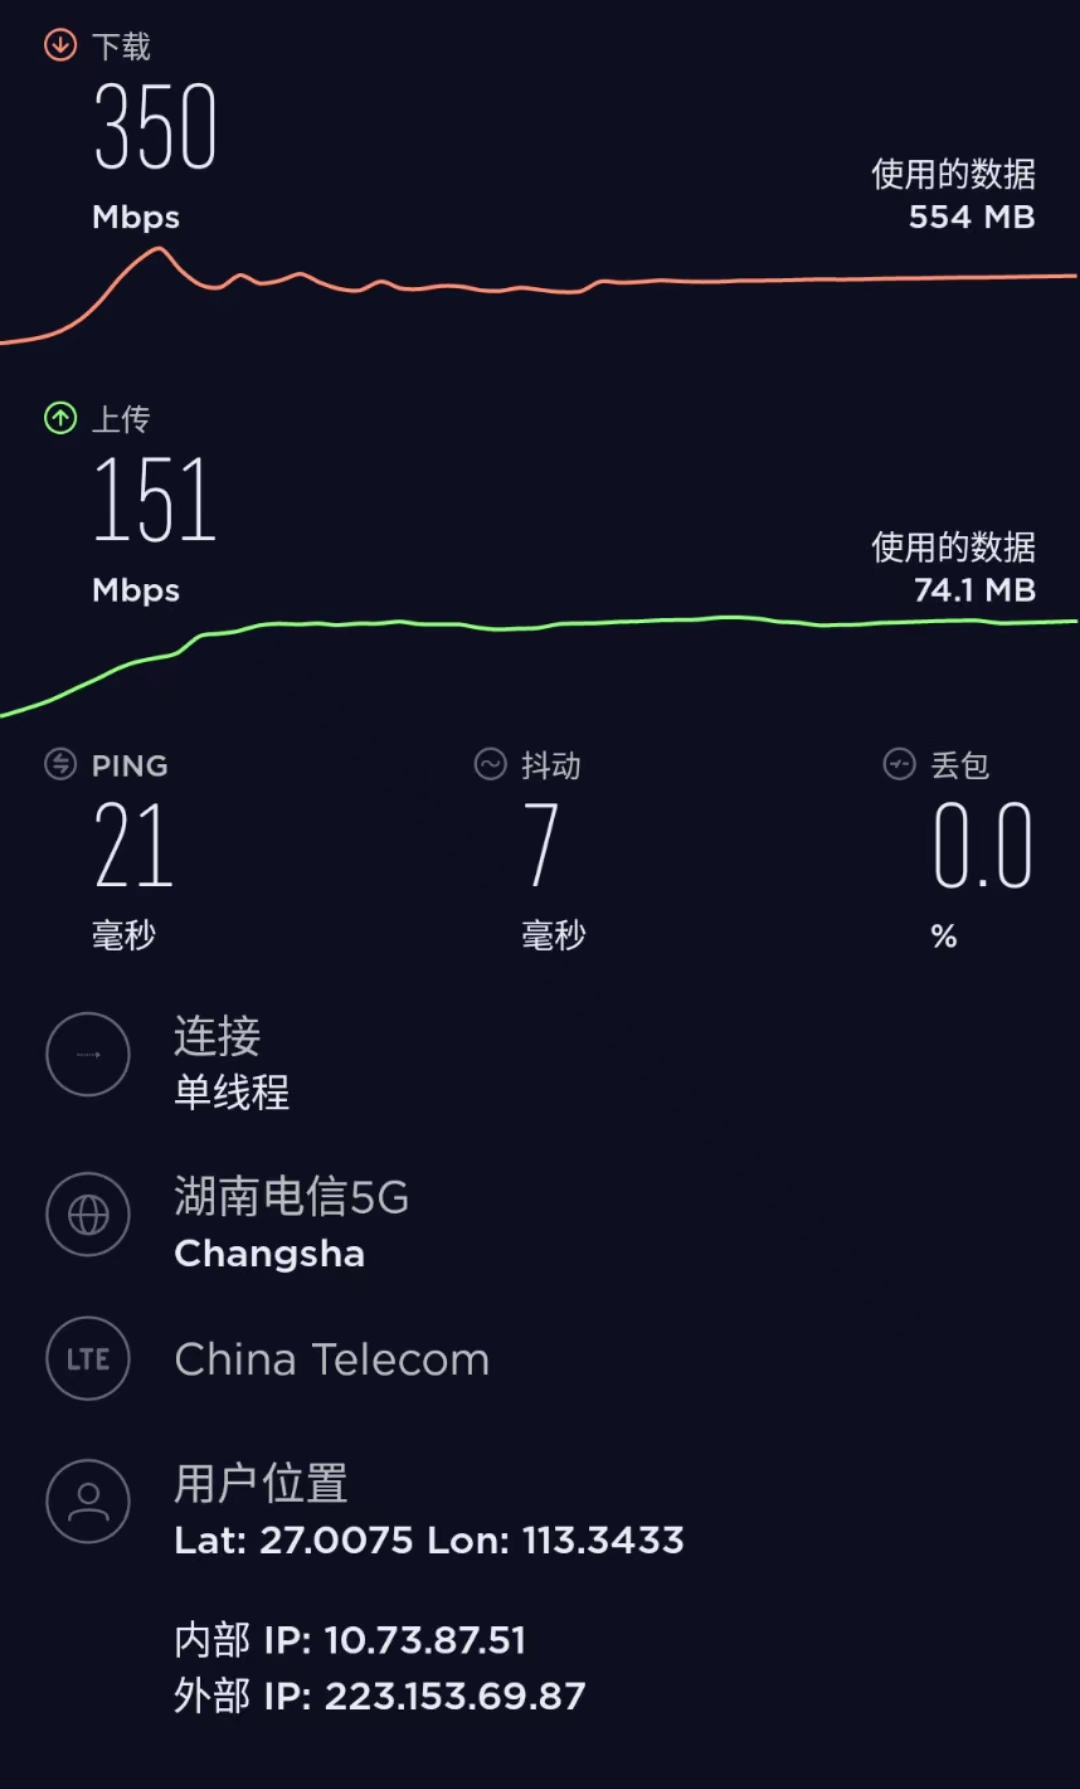 我只花了20块钱就买到了60G流量和500分钟通话-北京电信校园卡真实使用测评插图1